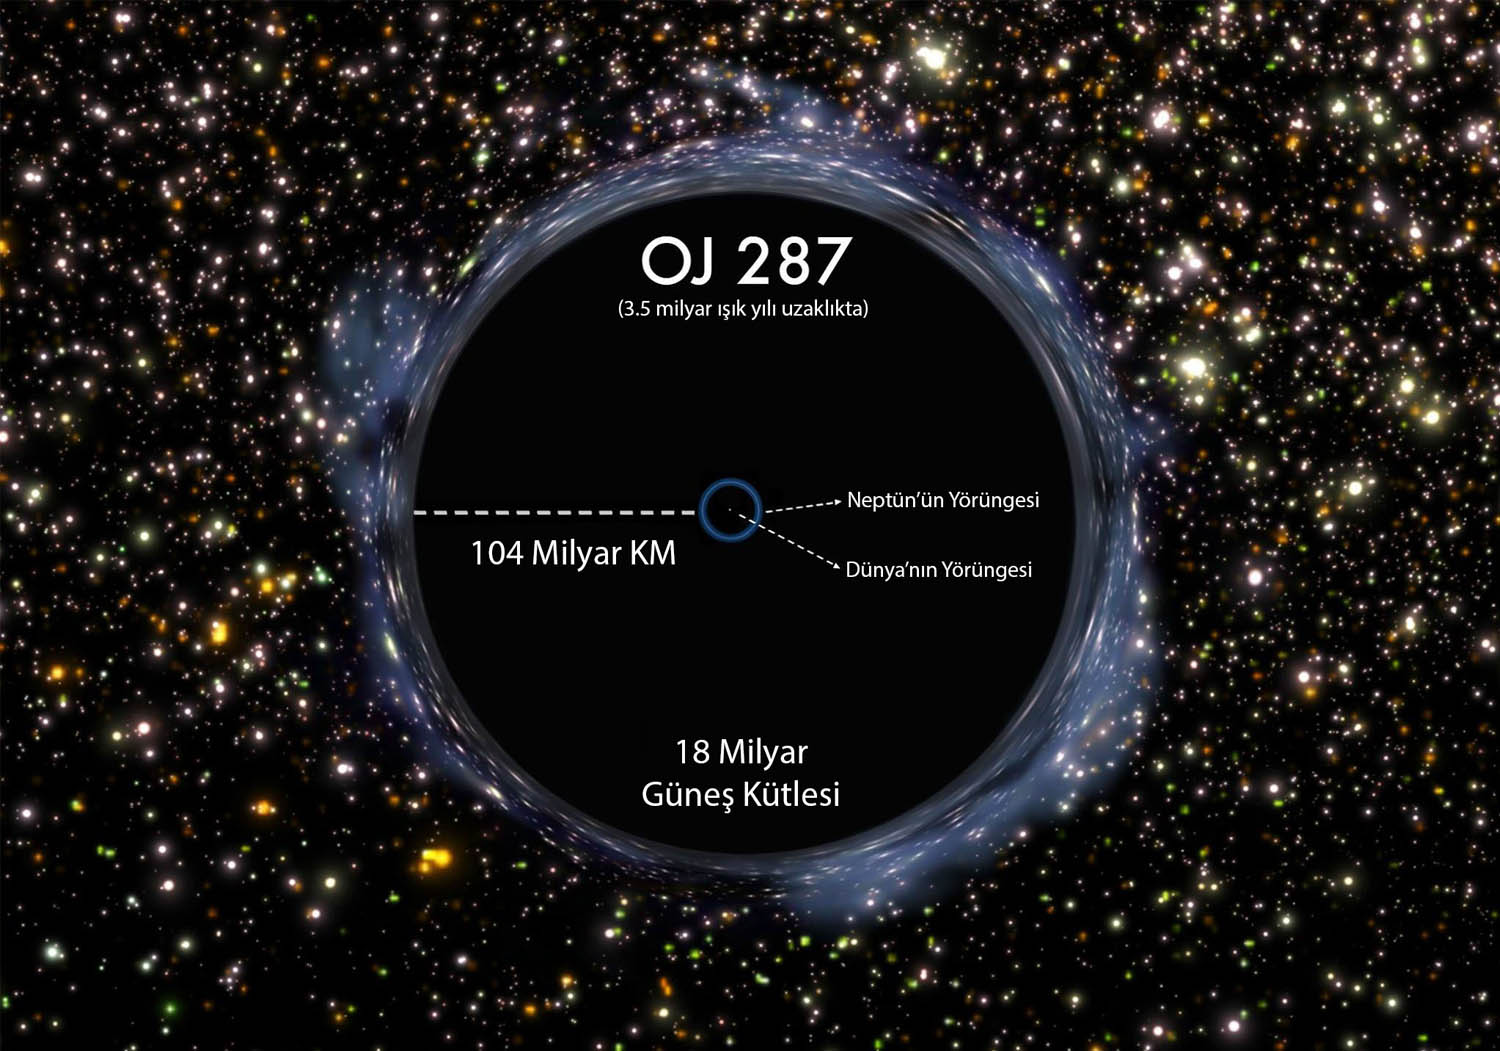 Черные дыры сравнению. Квазар oj287. OJ 287 черная дыра. Самая болшая чëрная дыра. Самая большая чёрная дыра размер.